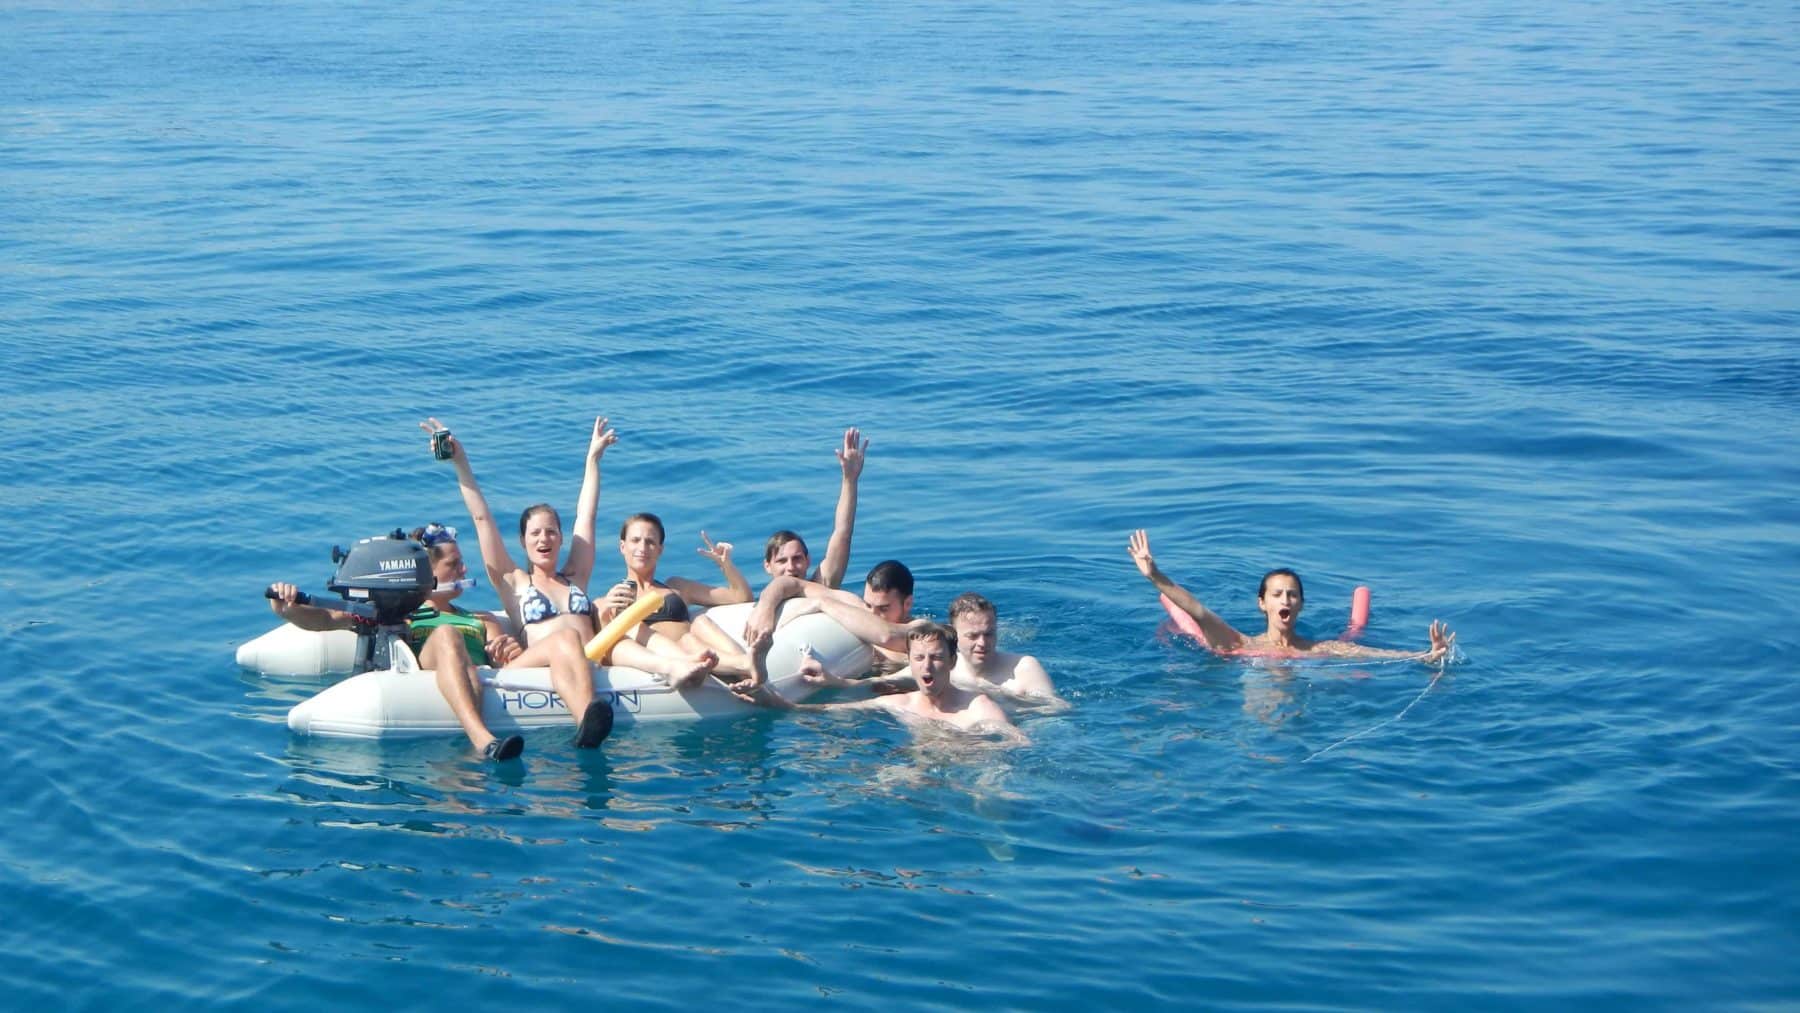 Eine Gruppe von sieben Menschen treibt fröhlich auf einer Segelyacht im klaren, blauen Ozean, einige winken und zeigen Peace-Zeichen und genießen einen sonnigen Tag.